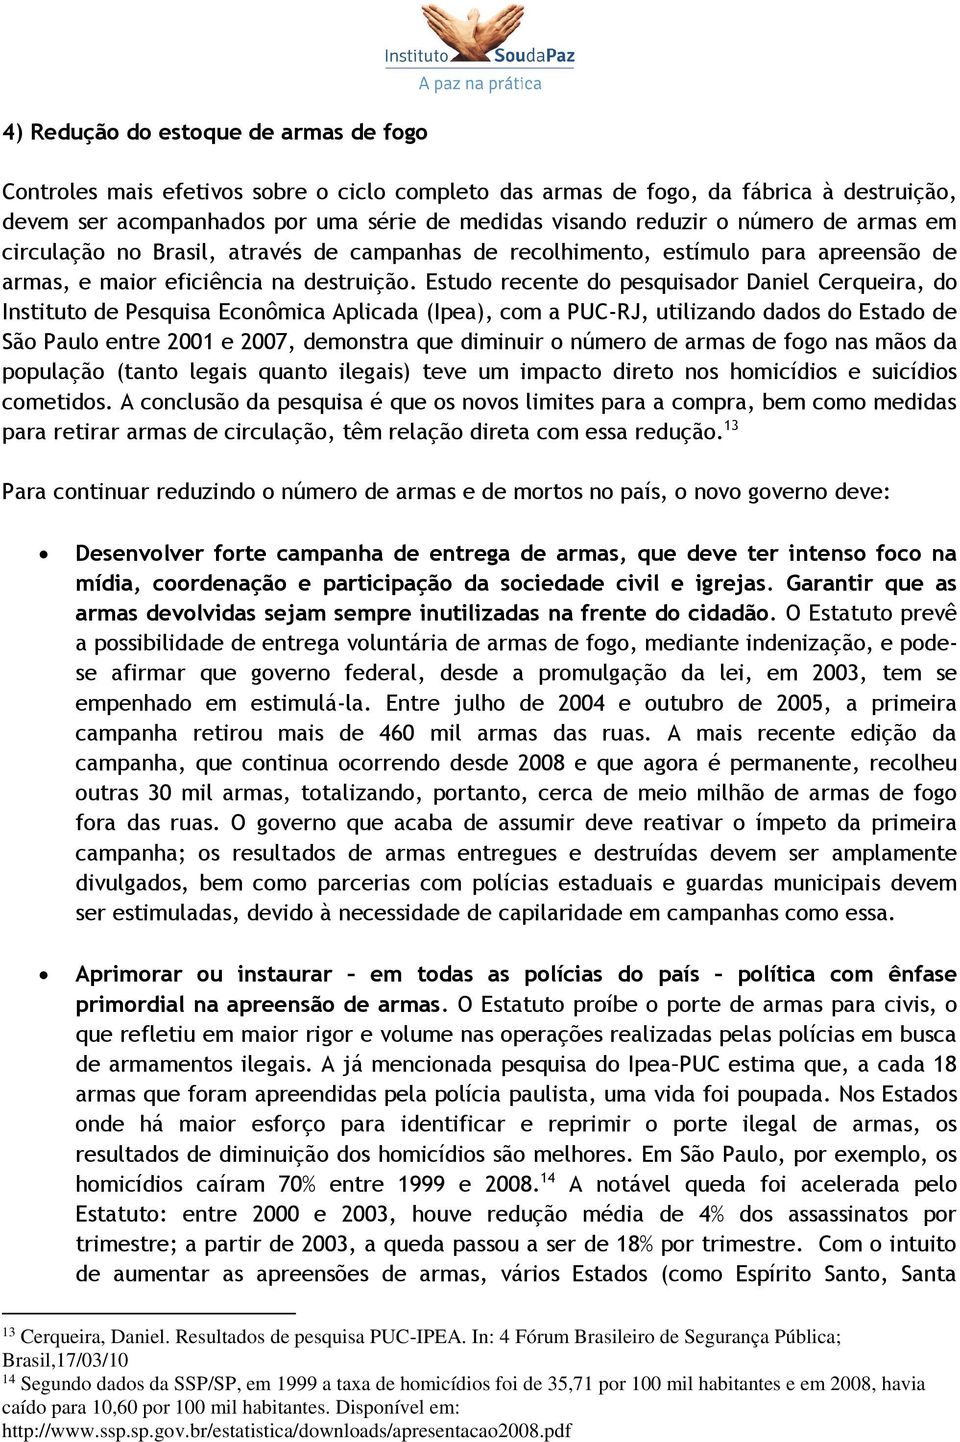 Estudo recente do pesquisador Daniel Cerqueira, do Instituto de Pesquisa Econômica Aplicada (Ipea), com a PUC-RJ, utilizando dados do Estado de São Paulo entre 2001 e 2007, demonstra que diminuir o